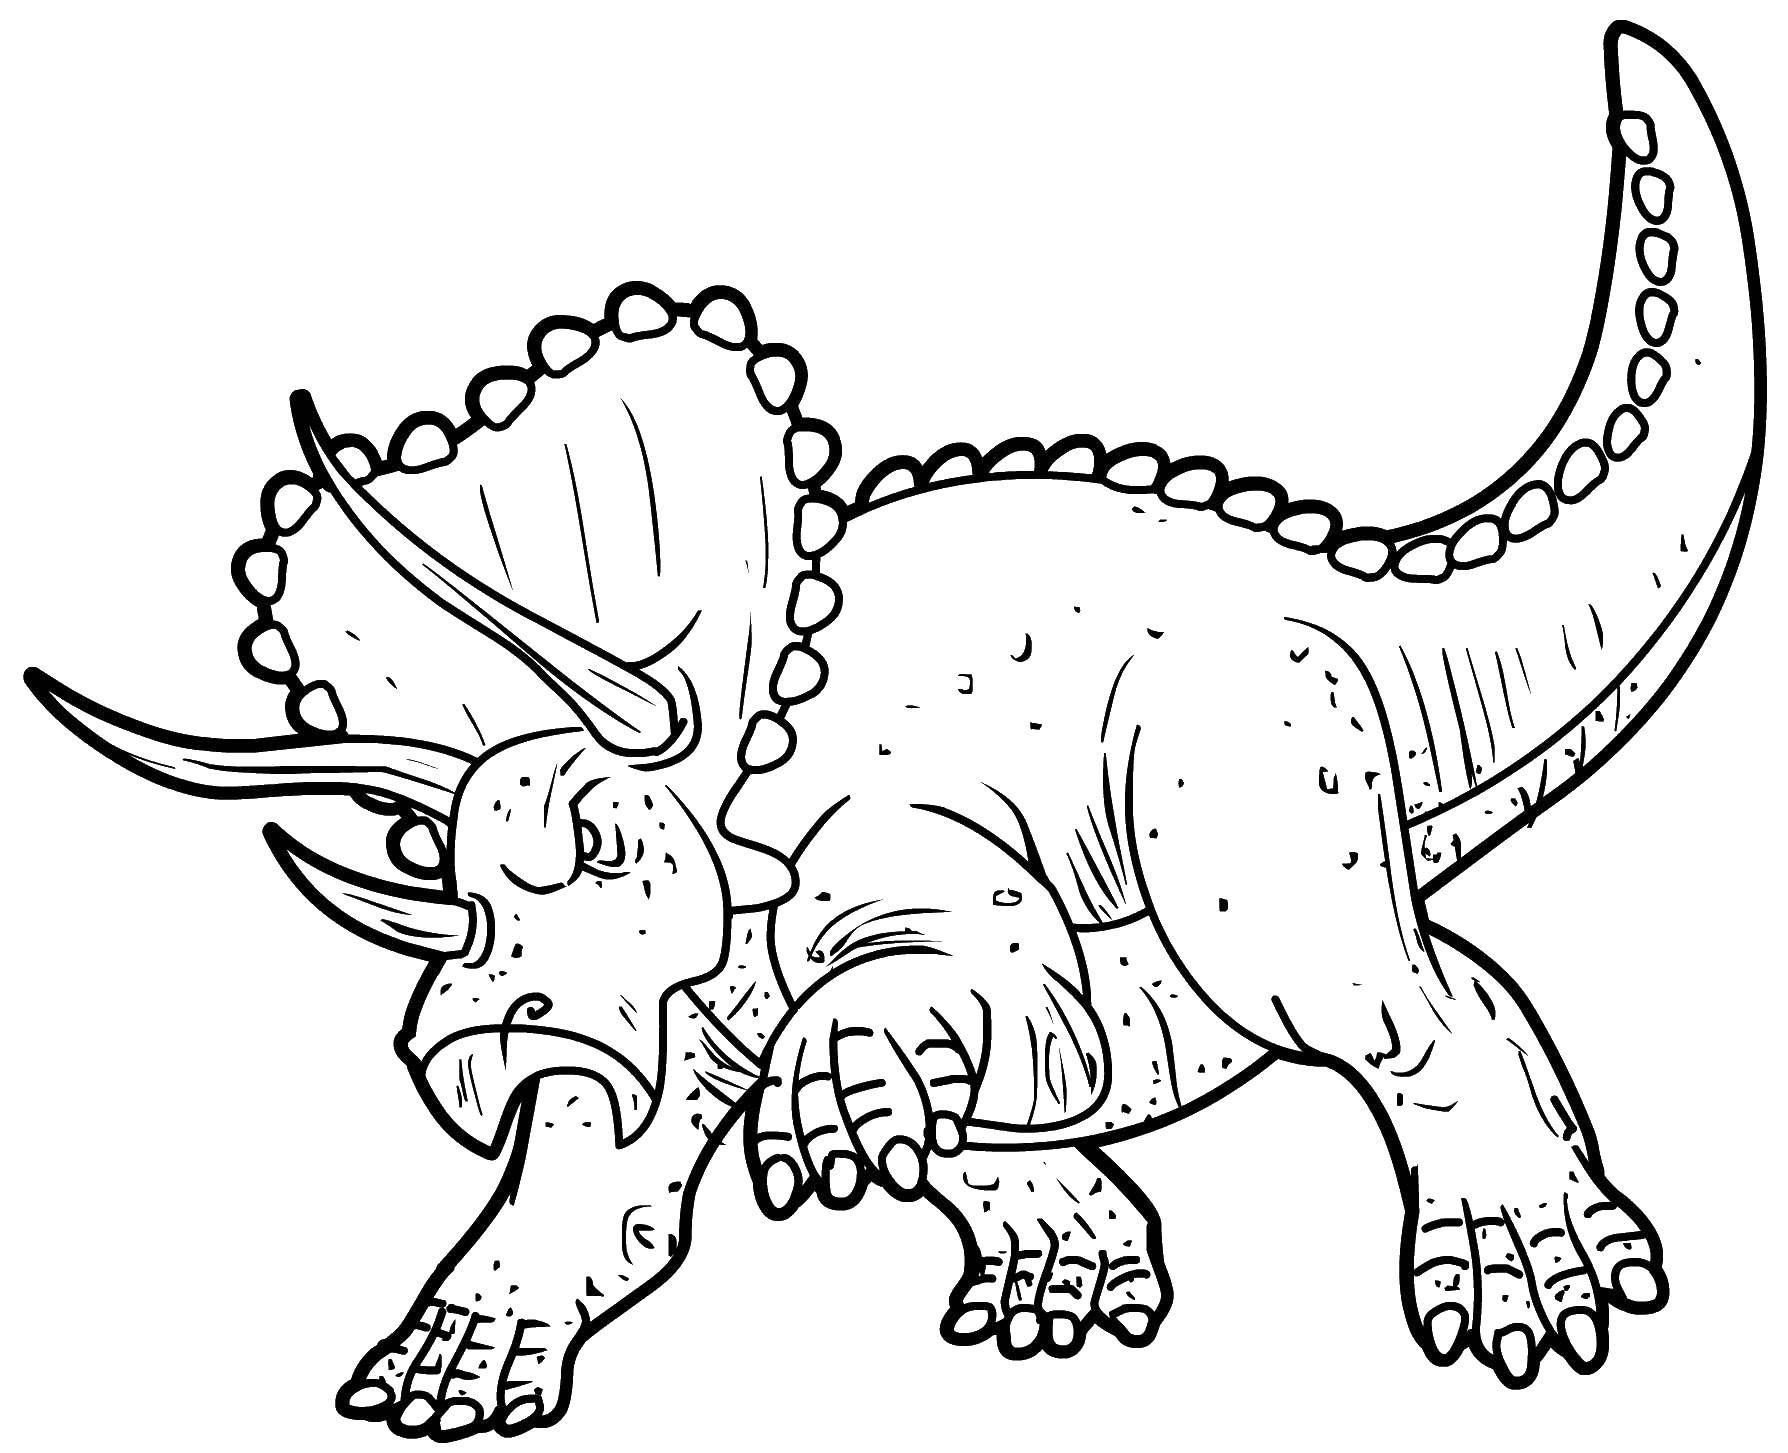   Трицератопс род растительноядных динозавров